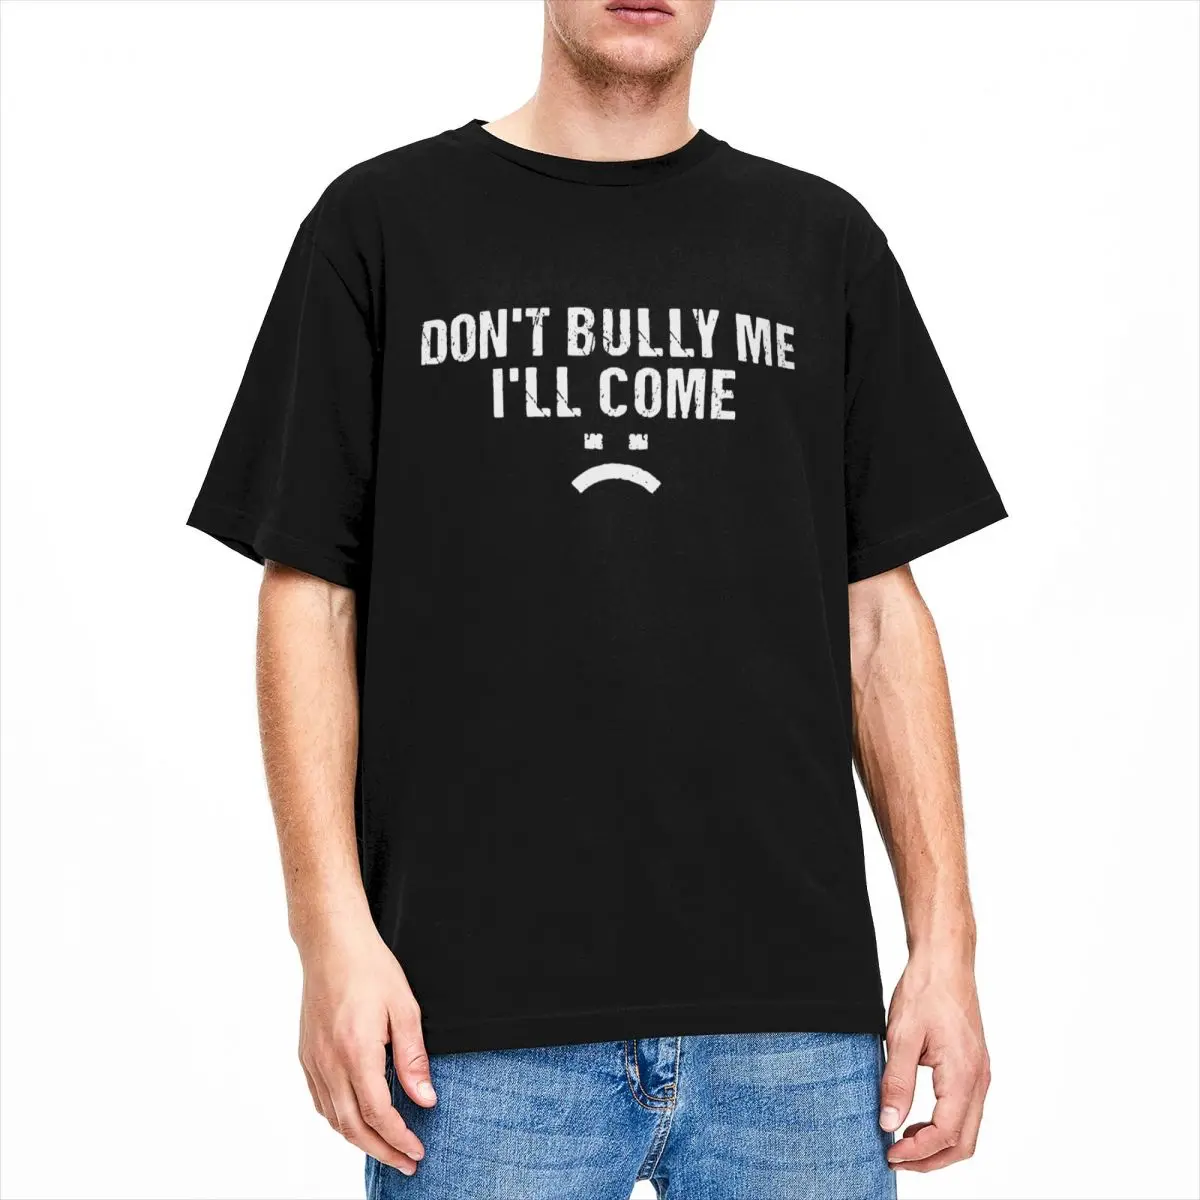 

Мужские футболки с надписью Don't Bully Me I Will Come, потрясающая хлопковая футболка с короткими рукавами, Забавные Саркастические высказывания, футболки, топы, летние футболки